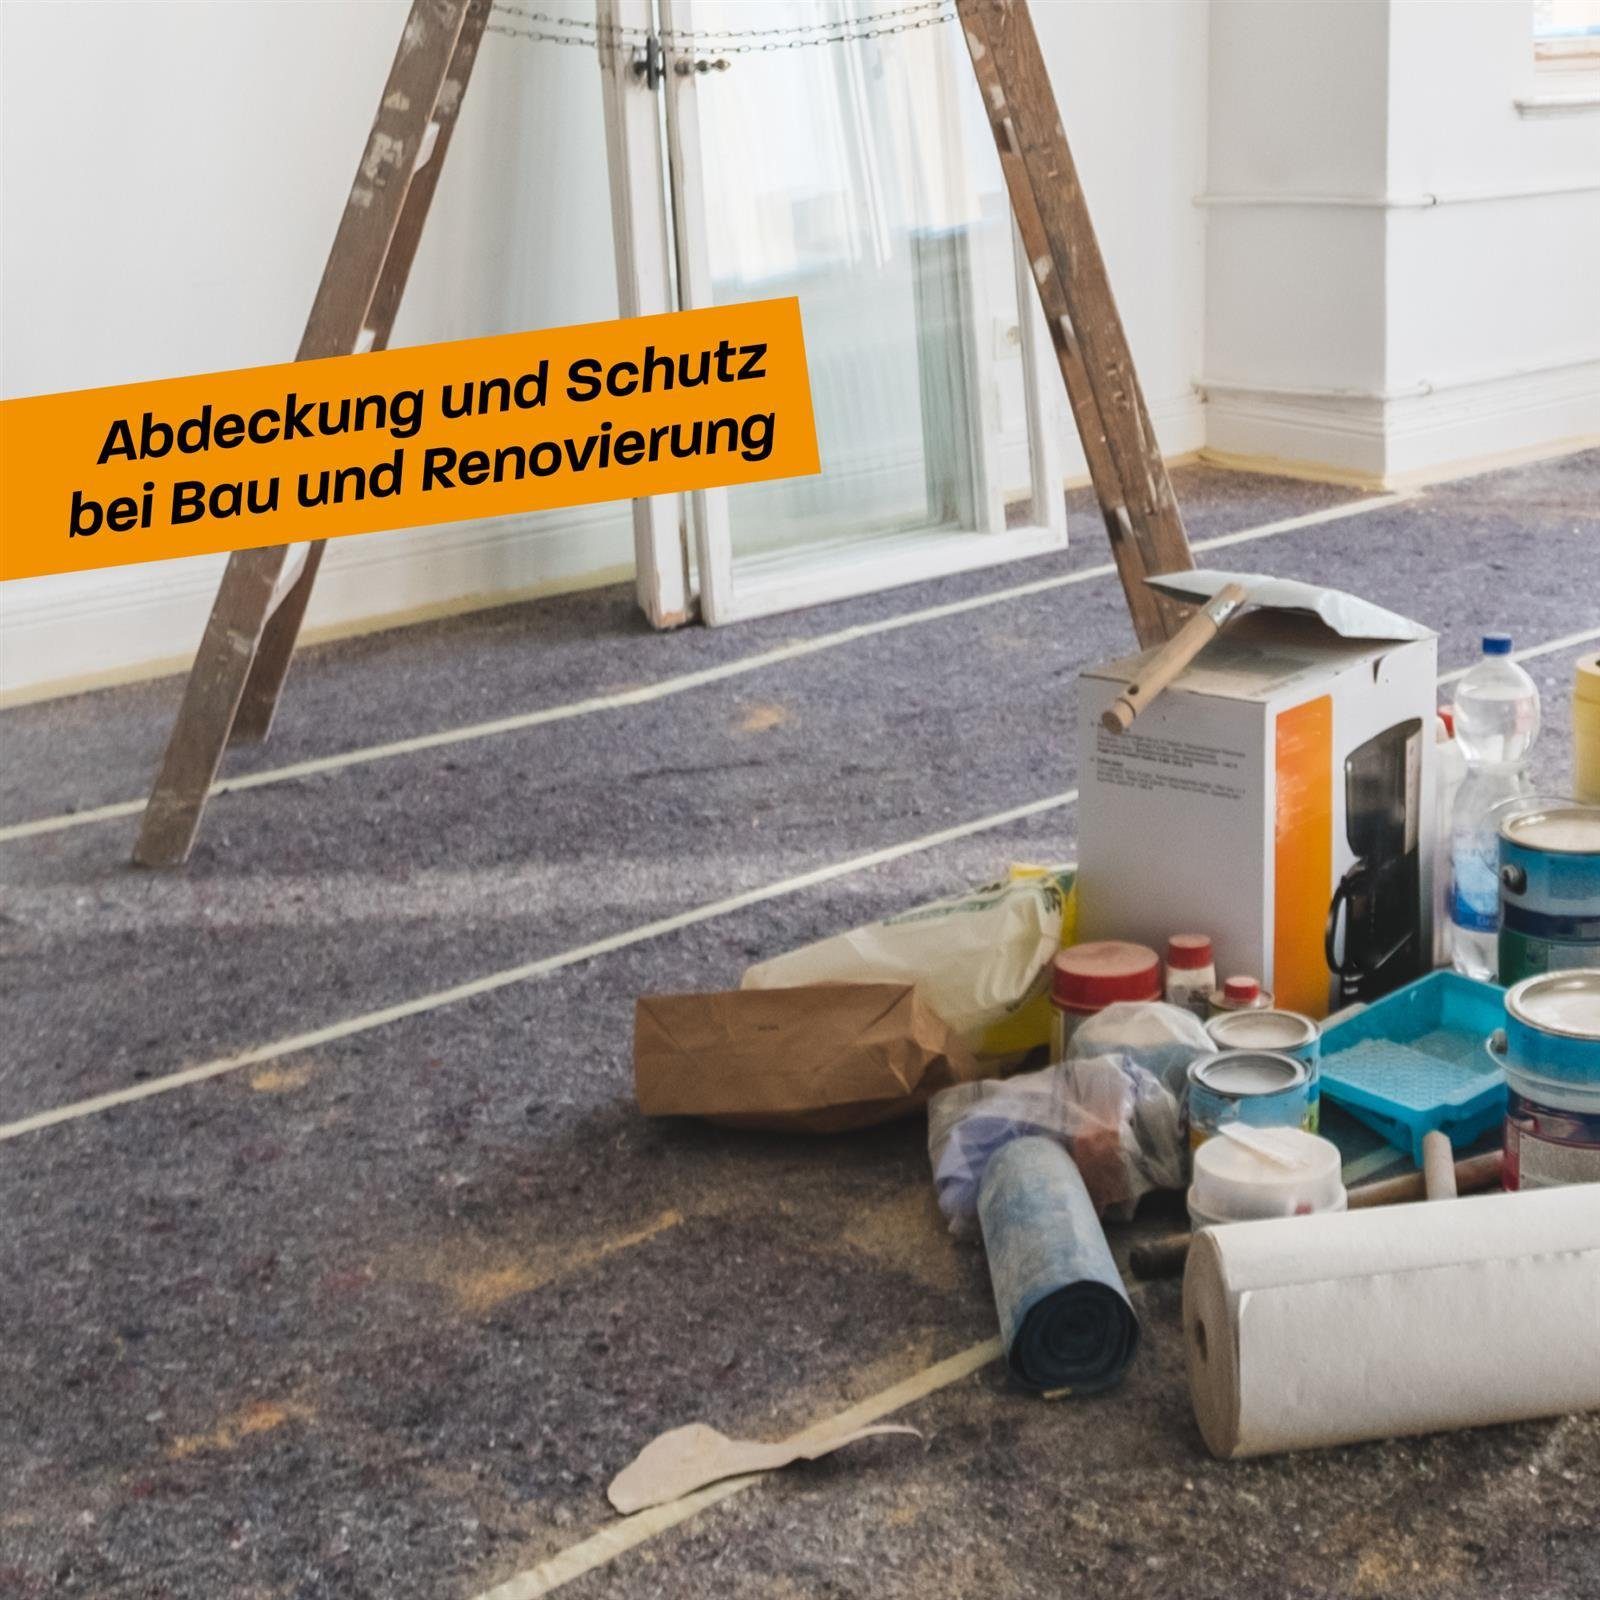 Hinrichs Malervlies Malervlies Umzug Renovierung rutschfest Malerarbeiten Abdeckvlies 180g/m², 5m und Vlies - für Bodenschutz